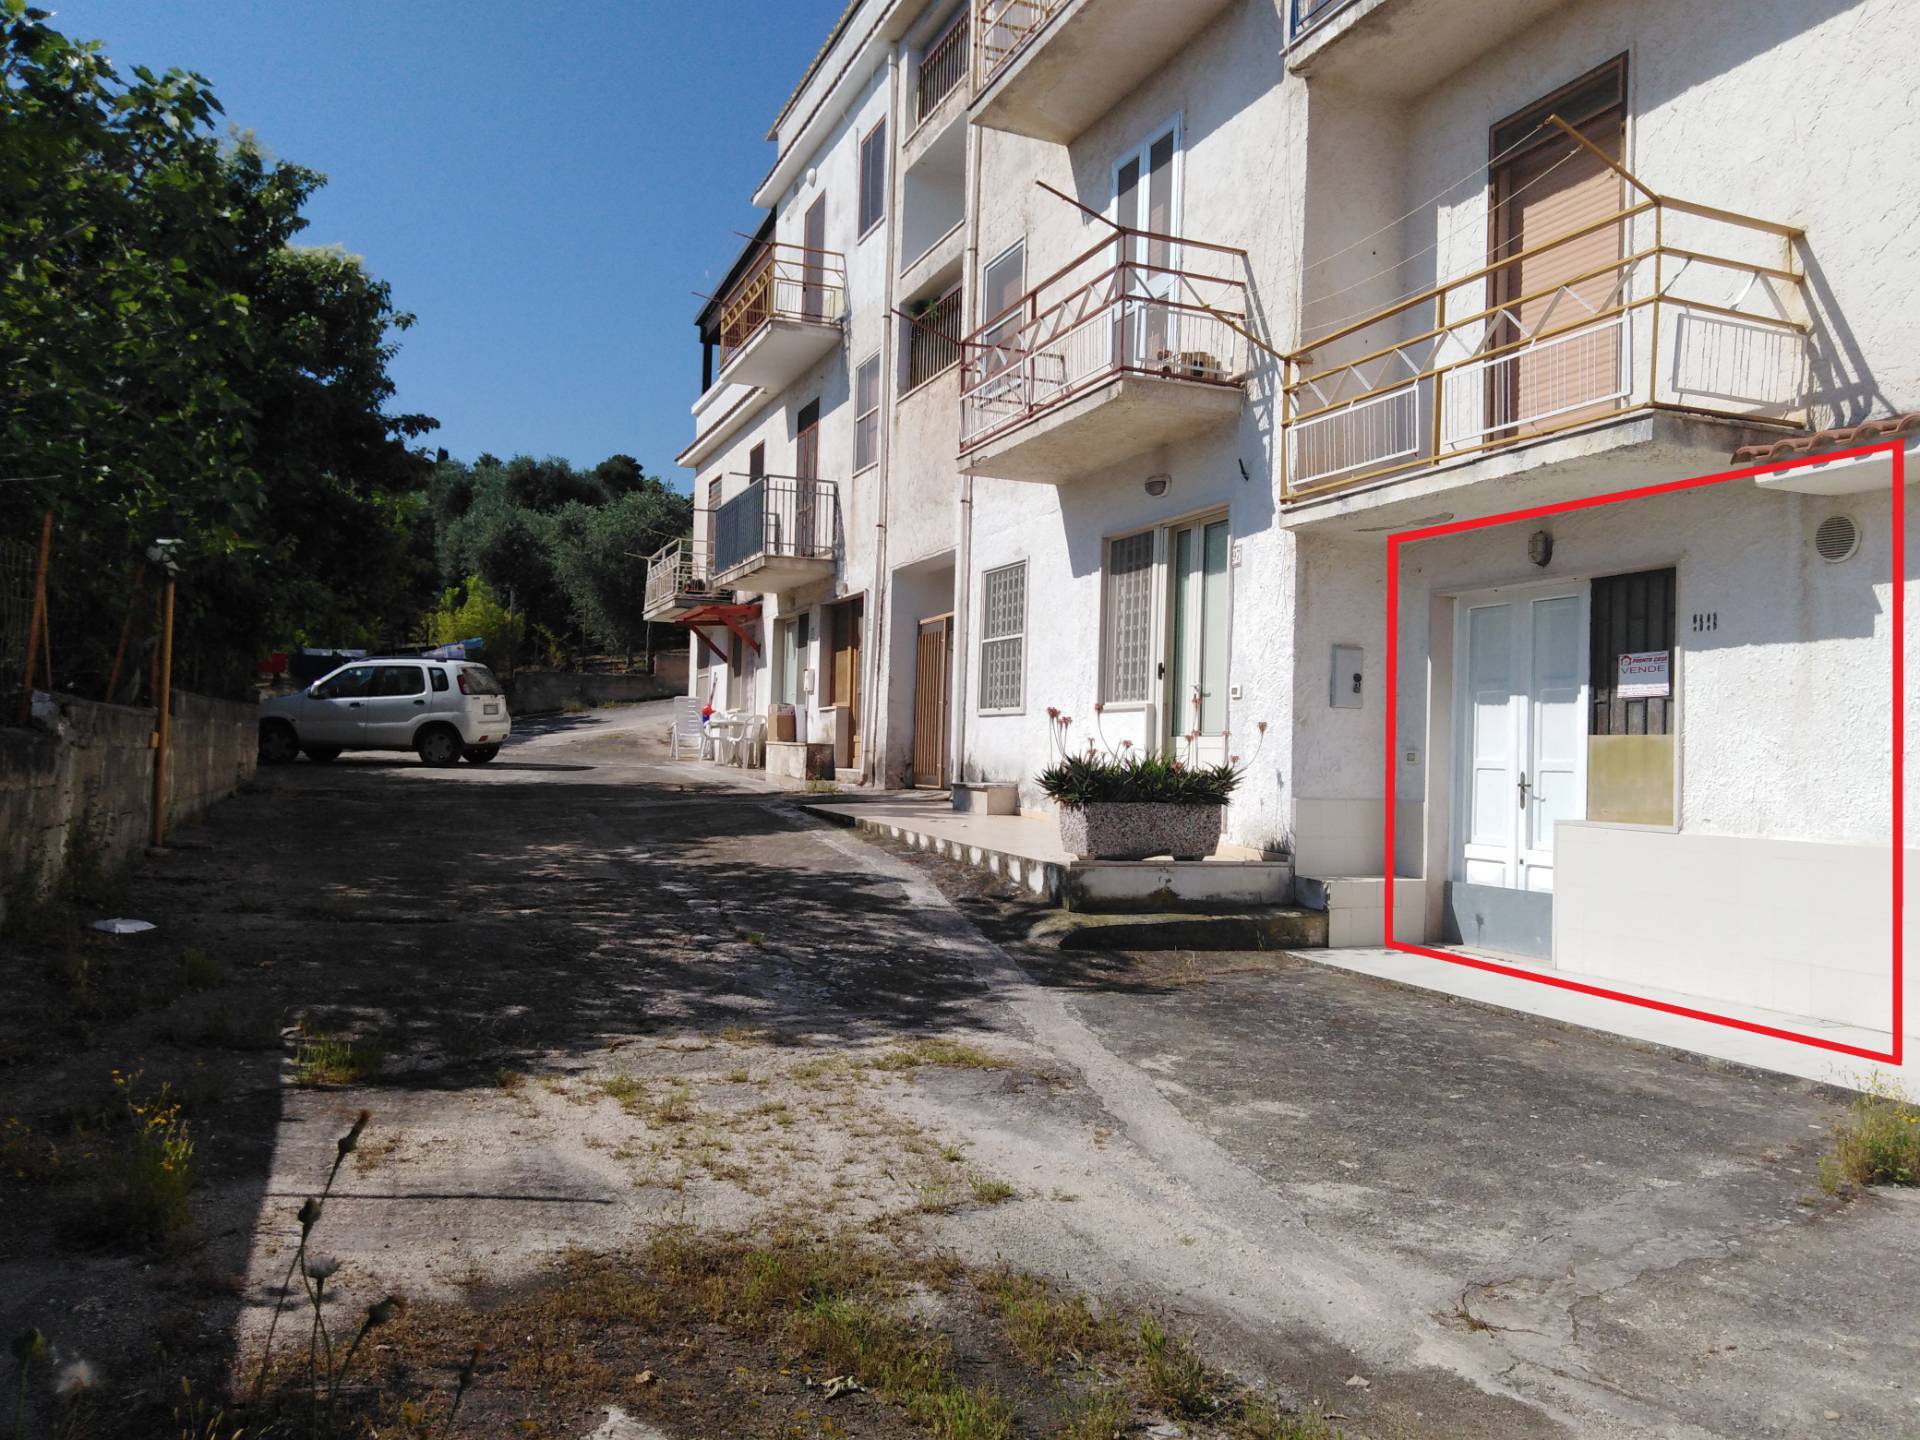 Appartamento in vendita a Vico del Gargano, 3 locali, zona Località: SanMenaio, prezzo € 35.000 | PortaleAgenzieImmobiliari.it